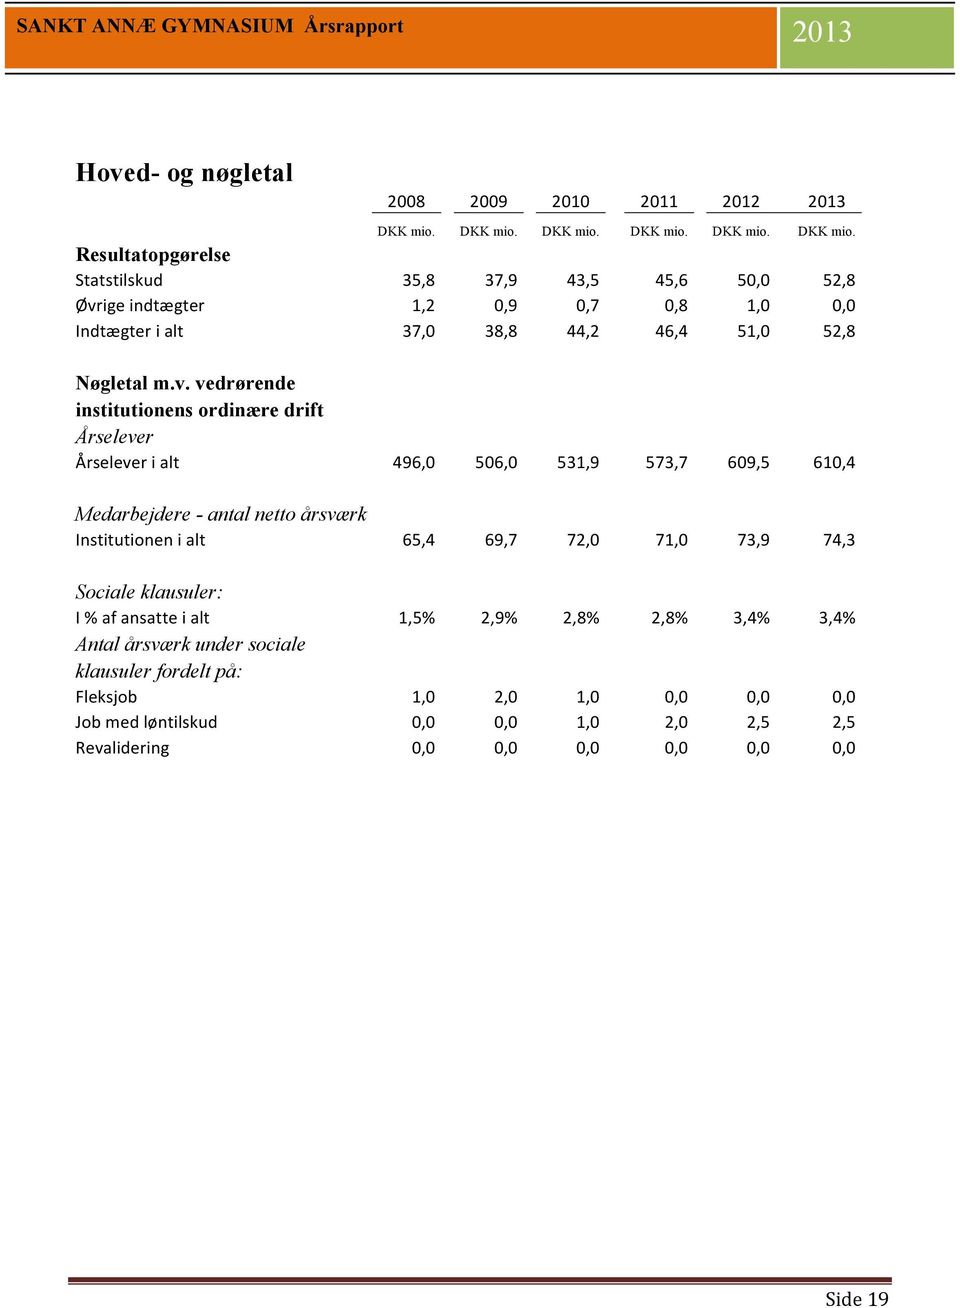 DKK mio. Resultatopgørelse Statstilskud 35,8 37,9 43,5 45,6 50,0 52,8 Øvr